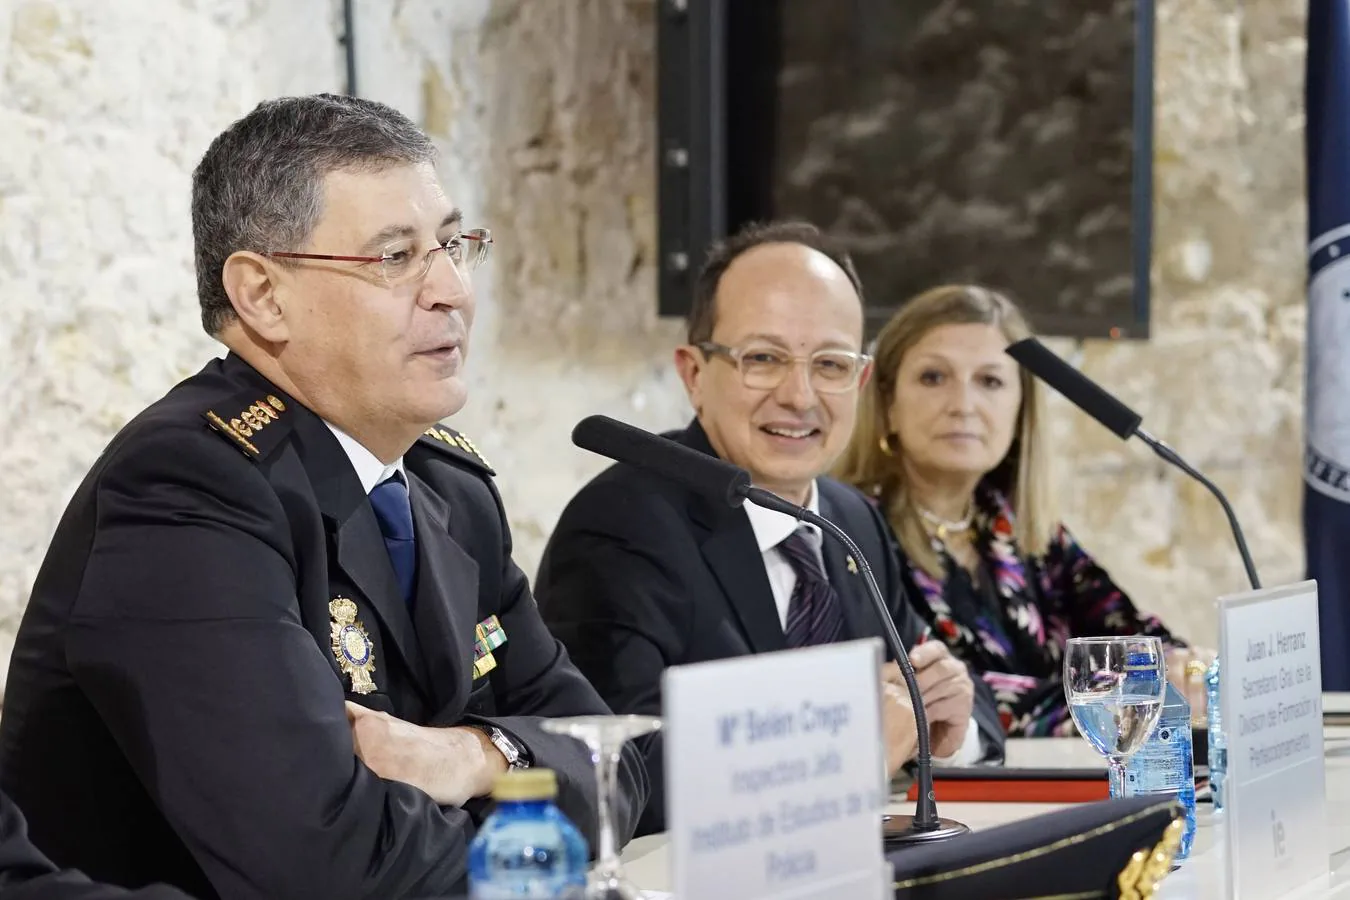 25 altos mandos policiales prcedentes de toda España participarán durante cinco meses en la sexta edición del Curso Superior de Gestión organizado por IE University